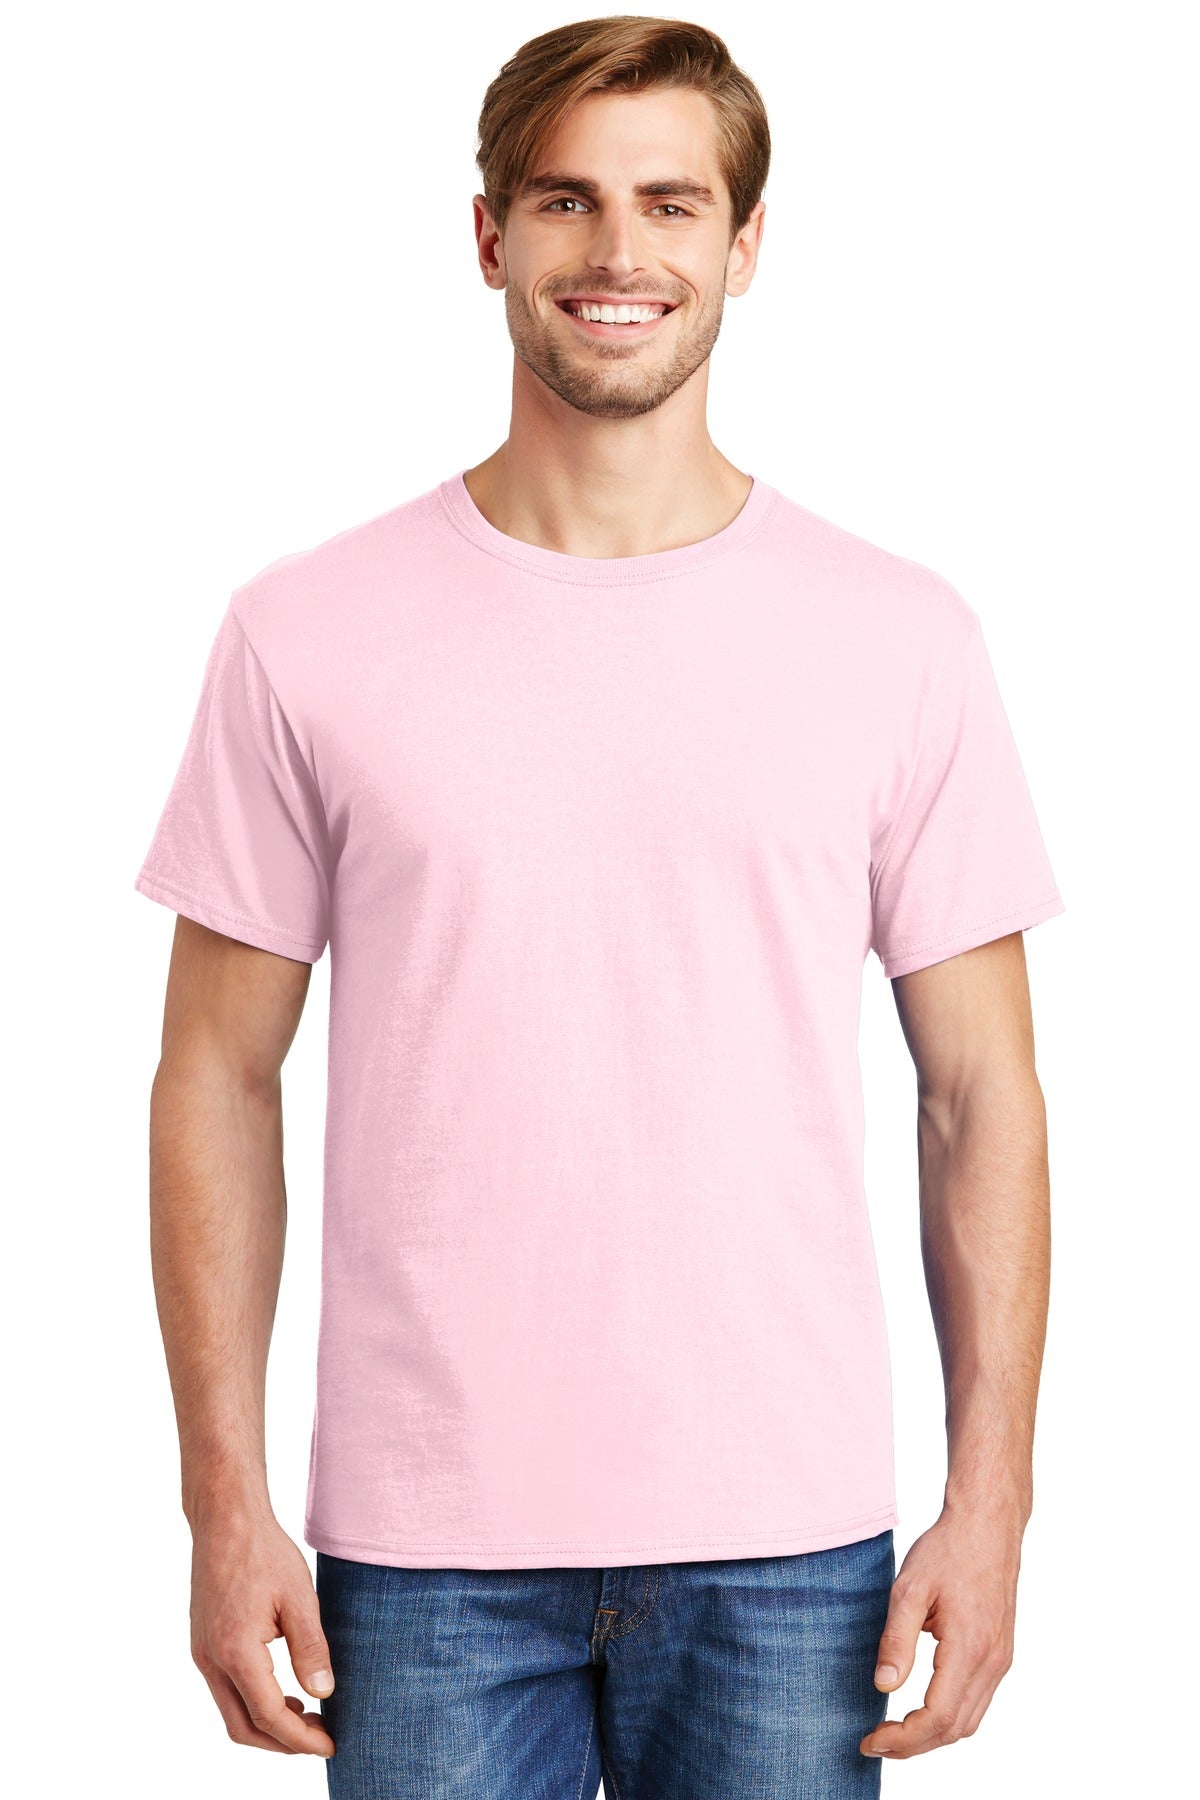 Hanes® - Essential-T 100% Cotton T-Shirt. 5280 [Pale Pink] - DFW Impression